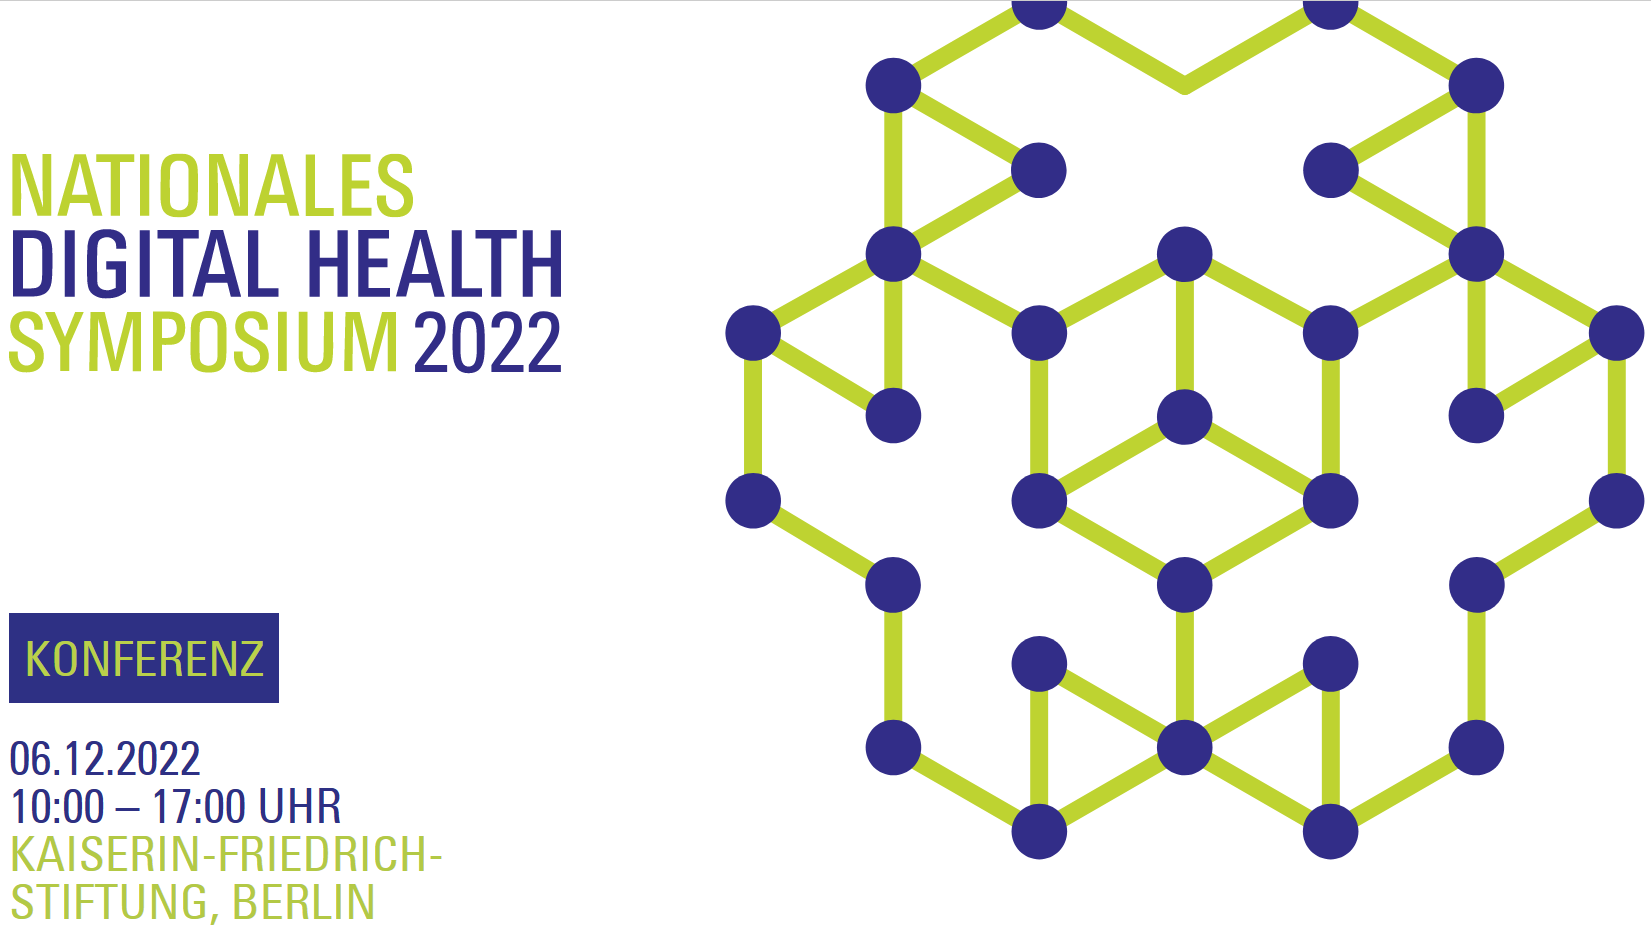 EHDS Impressionen vom Nationalen Digital Health Symposium am 6. Dez. 2022 in Berlin